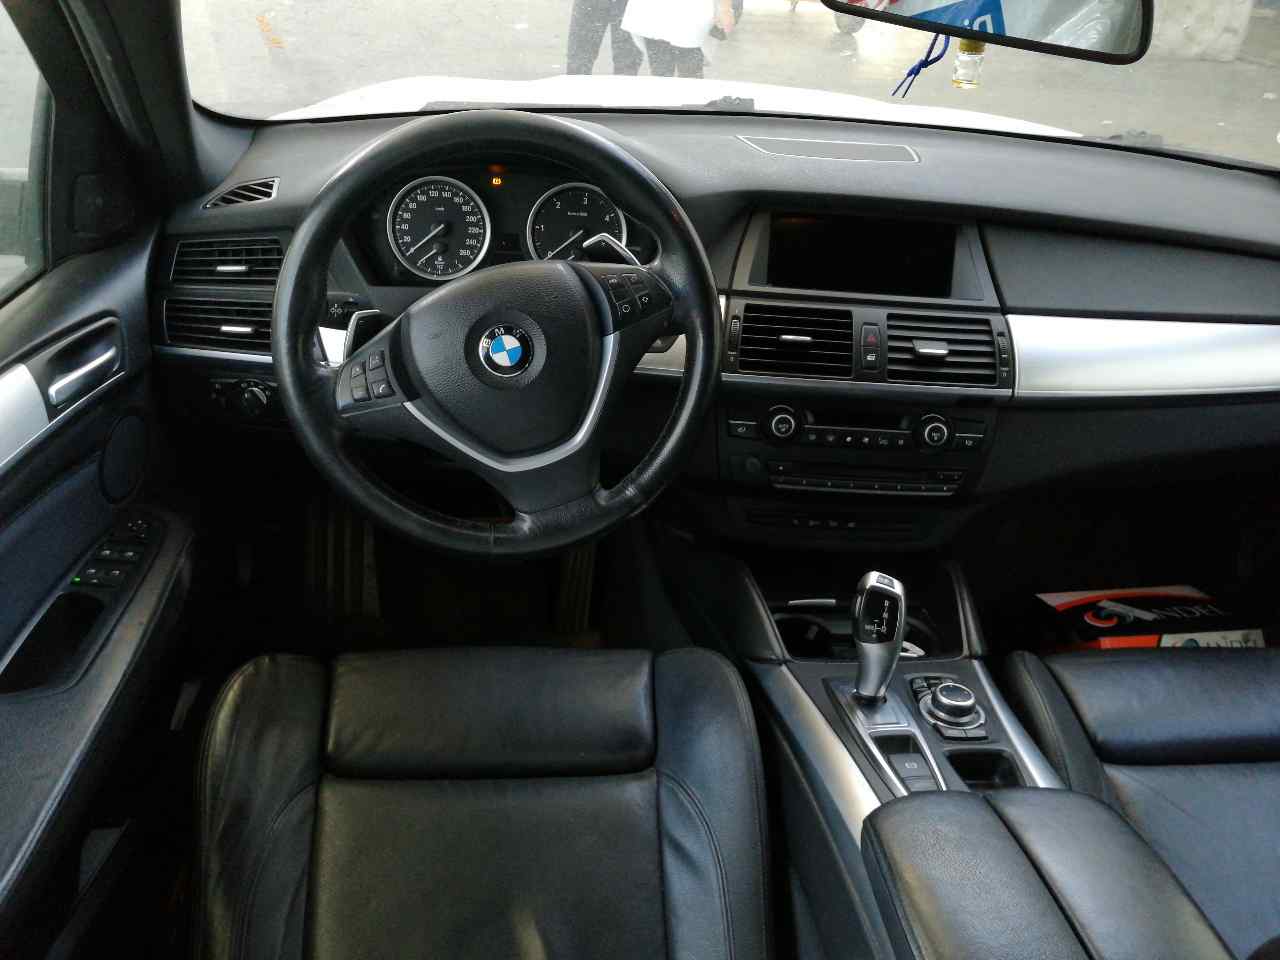 BMW X6 E71/E72 (2008-2012) Tire R2010JX20EH2IS40, 6778588, ALUMINIO5P 19888308